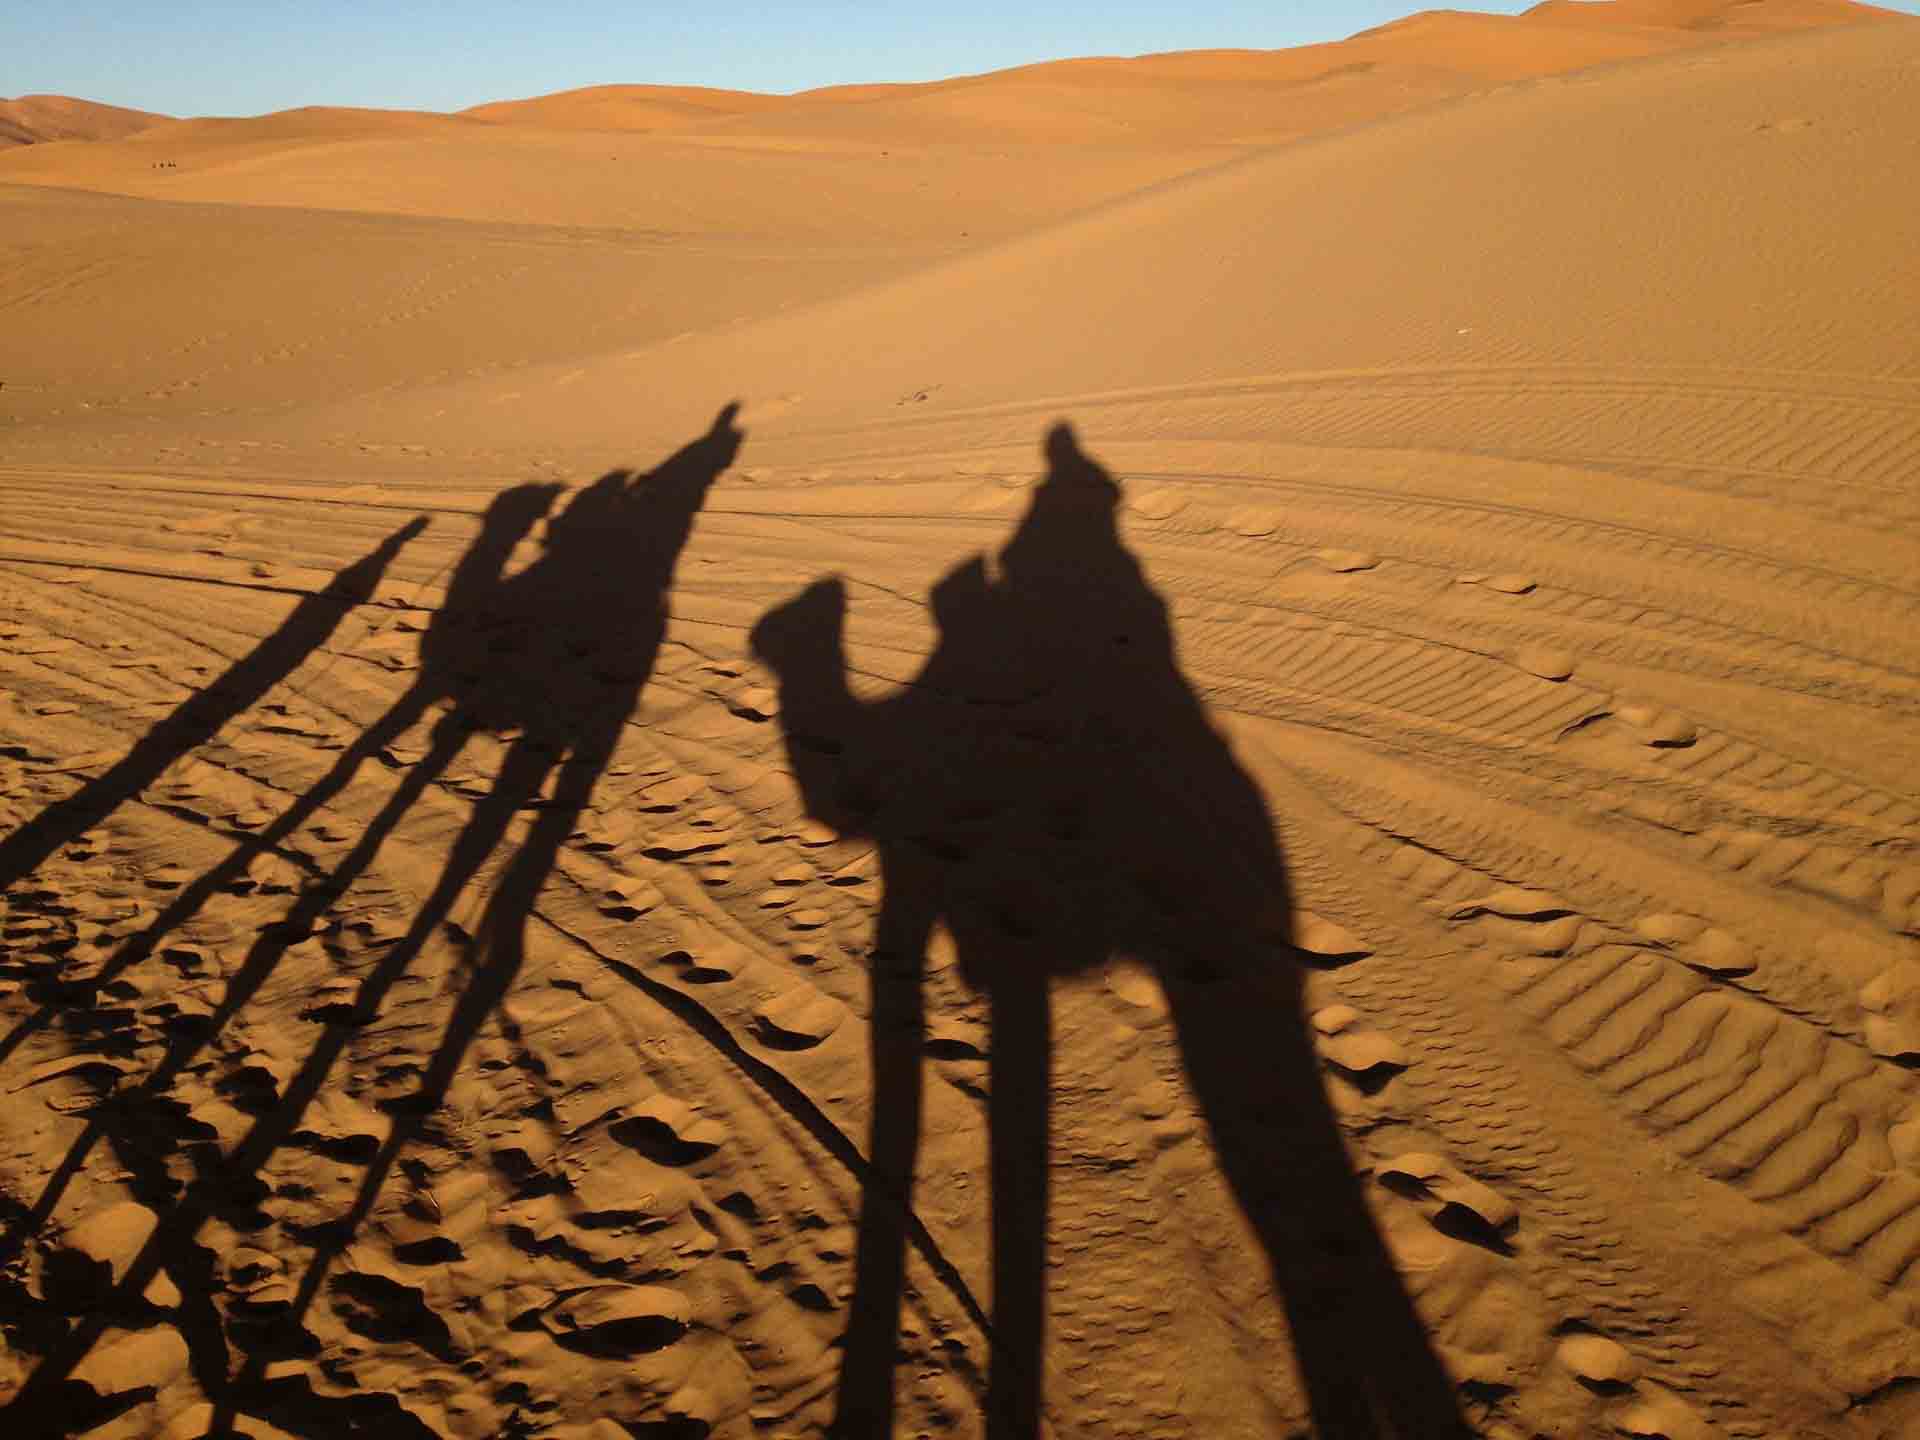 camel ride in the desert